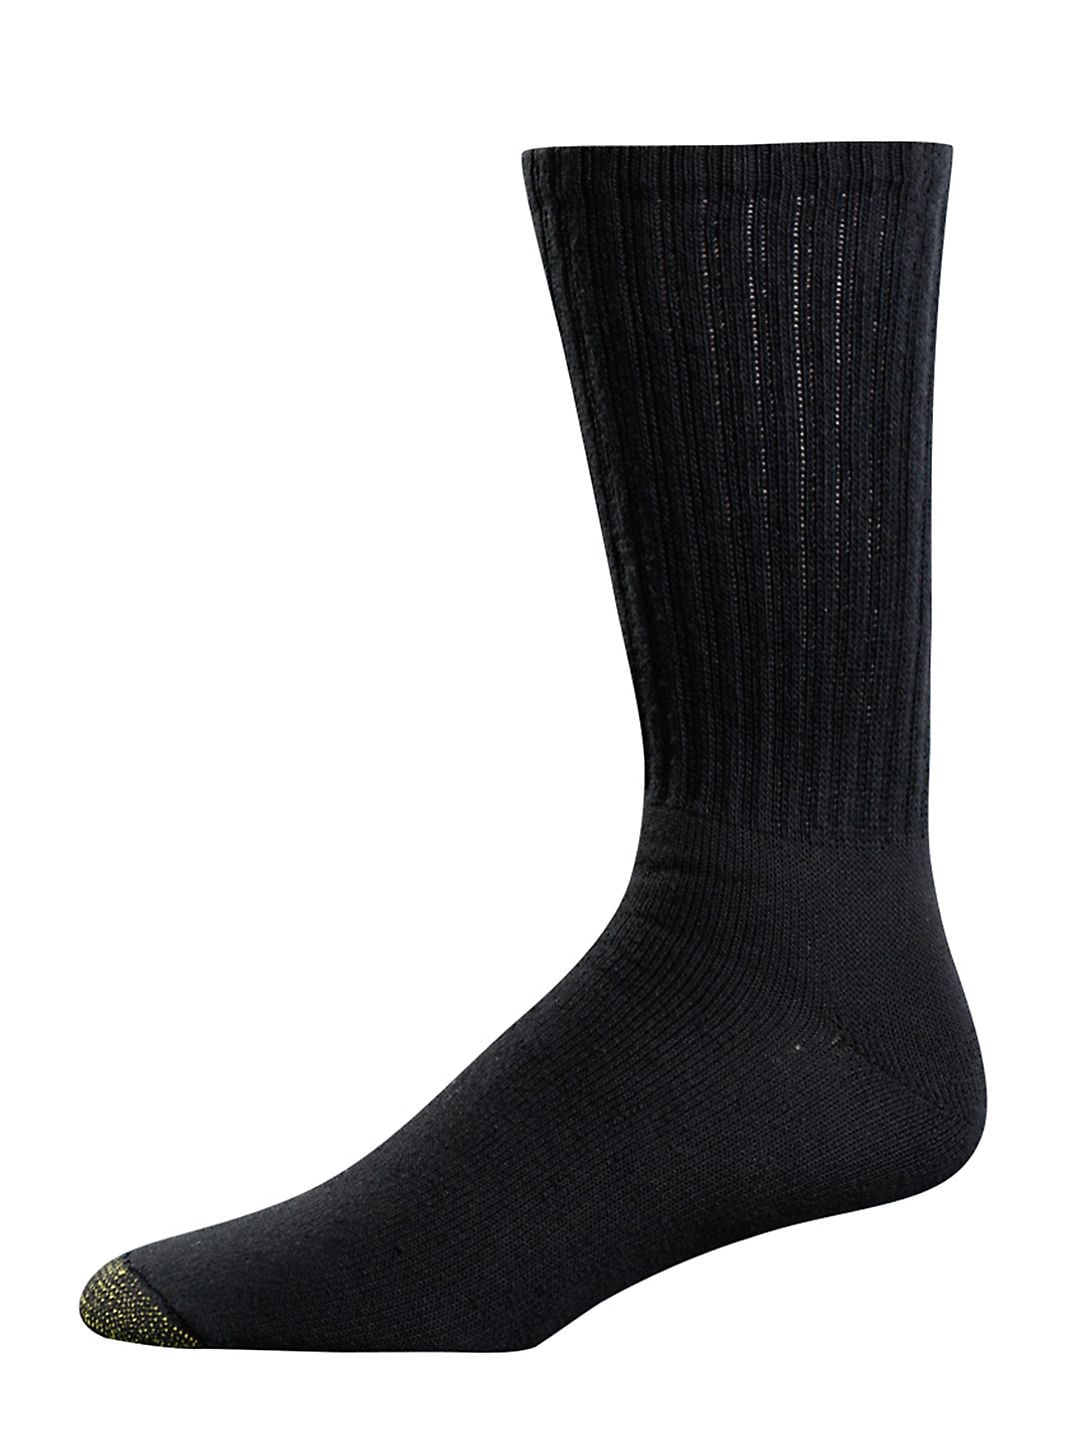 Gold Toe Mens Harrington Crew Socks Nylon Cotton Cushion Denim 6Pk Size10-13 